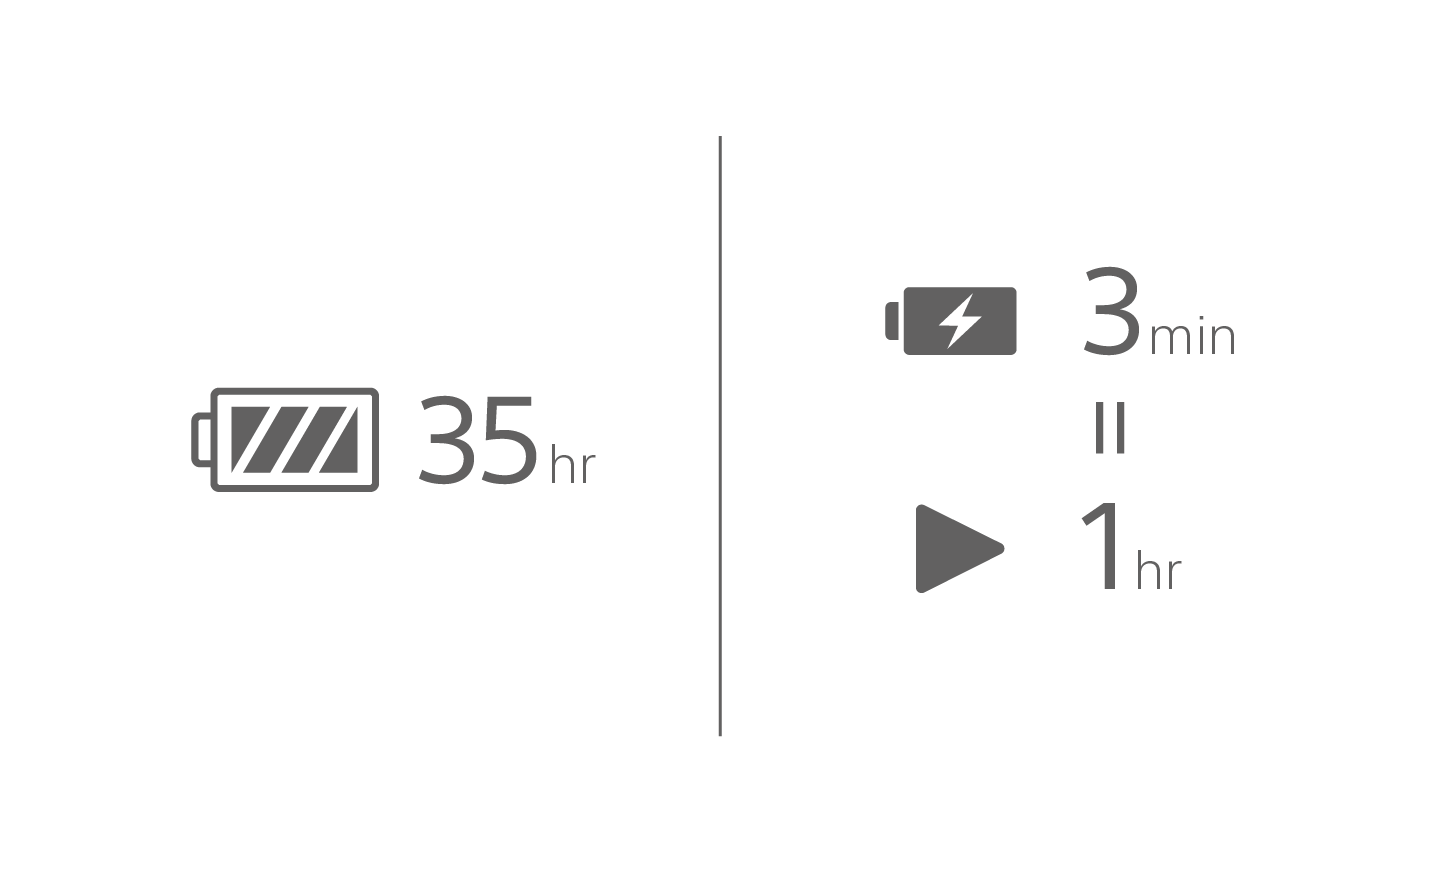 Изображение на иконка на батерия с текст 35 ч, иконка на зареждане на батерия с текст 3 мин над иконка за възпроизвеждане с текст 1 ч